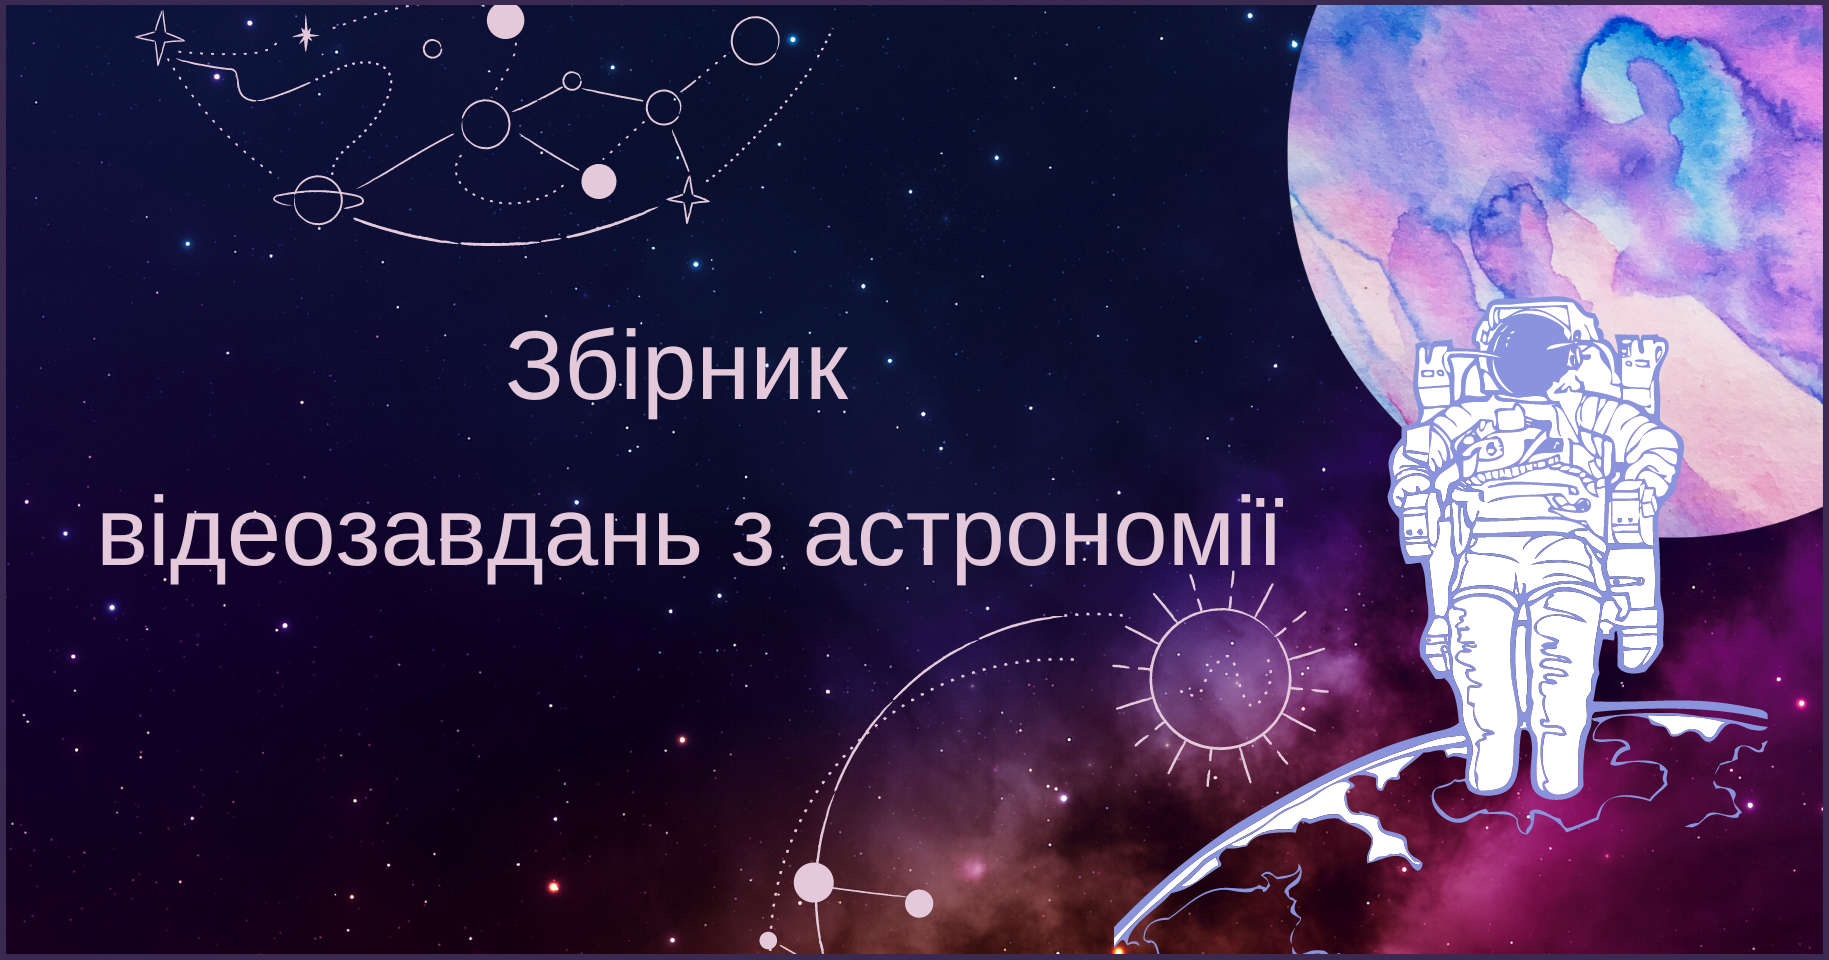 Мала академія наук України запустила збірник відеозавдань з астрономії